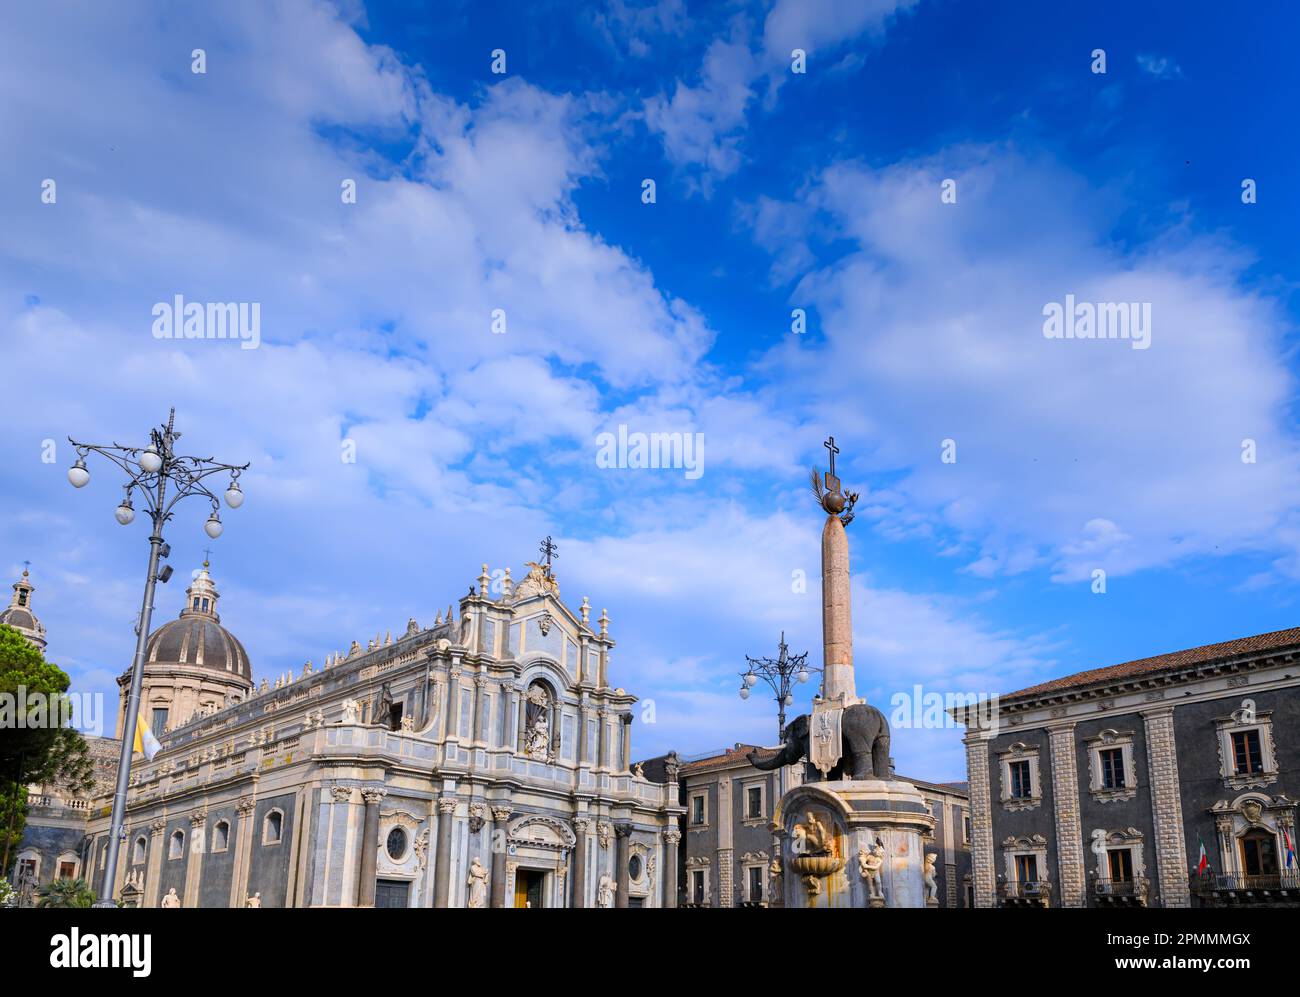 Vista de la Plaza de la Catedral dominada por la Catedral de Santa Ágata y la Fuente del Elefante en Catania, Sicilia, sur de Italia. Foto de stock